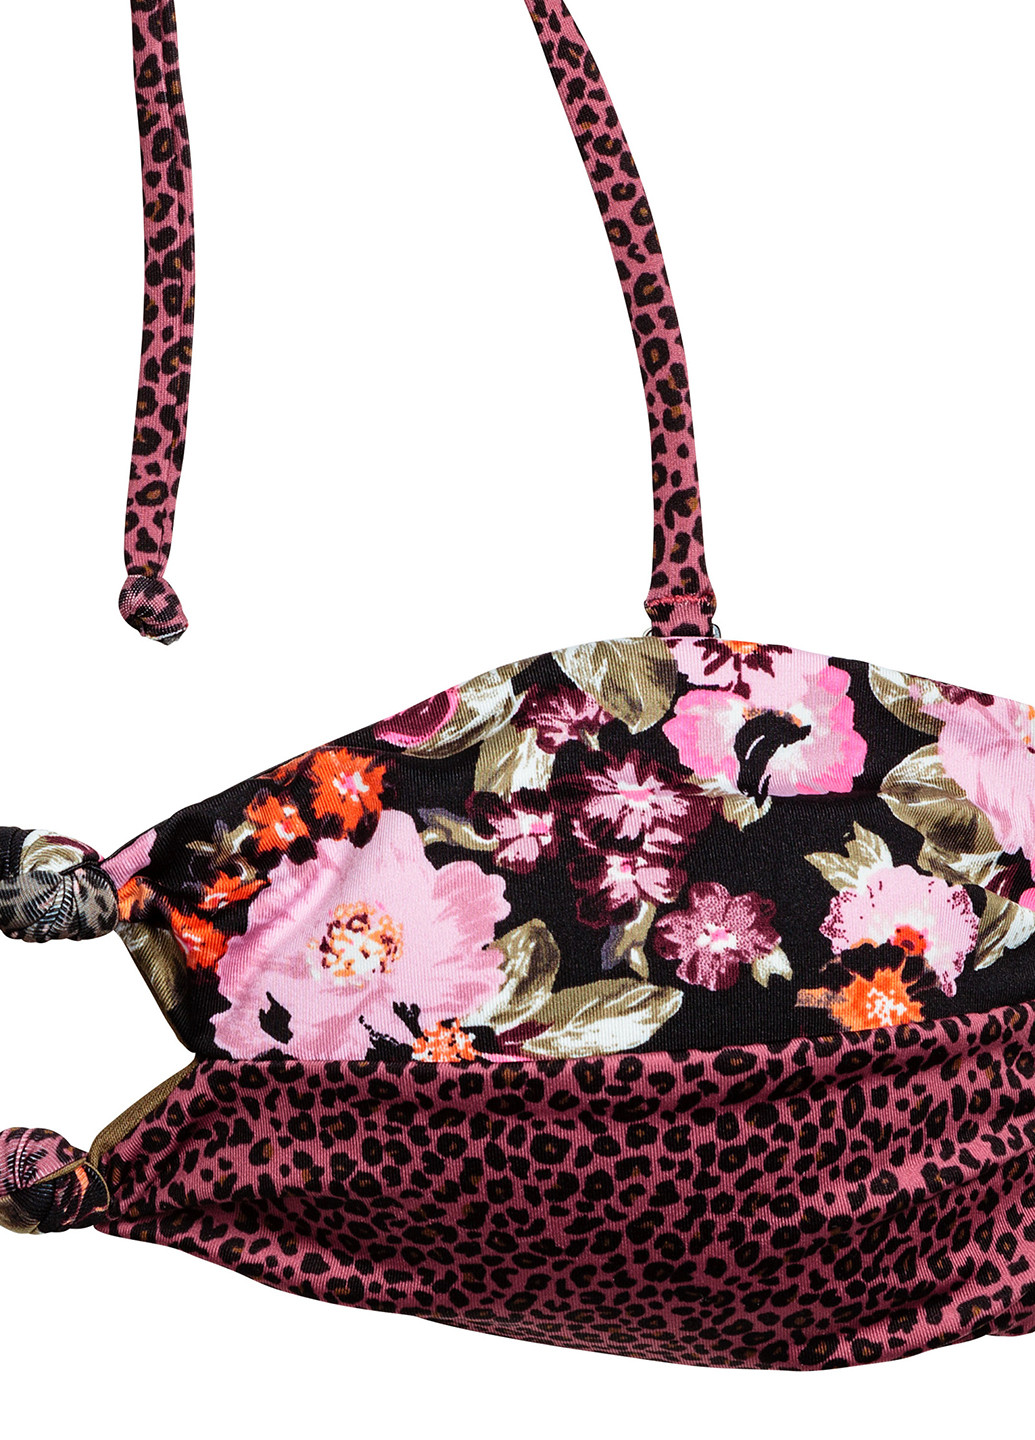 Купальный лиф H&M бандо леопардовый комбинированный пляжный полиамид